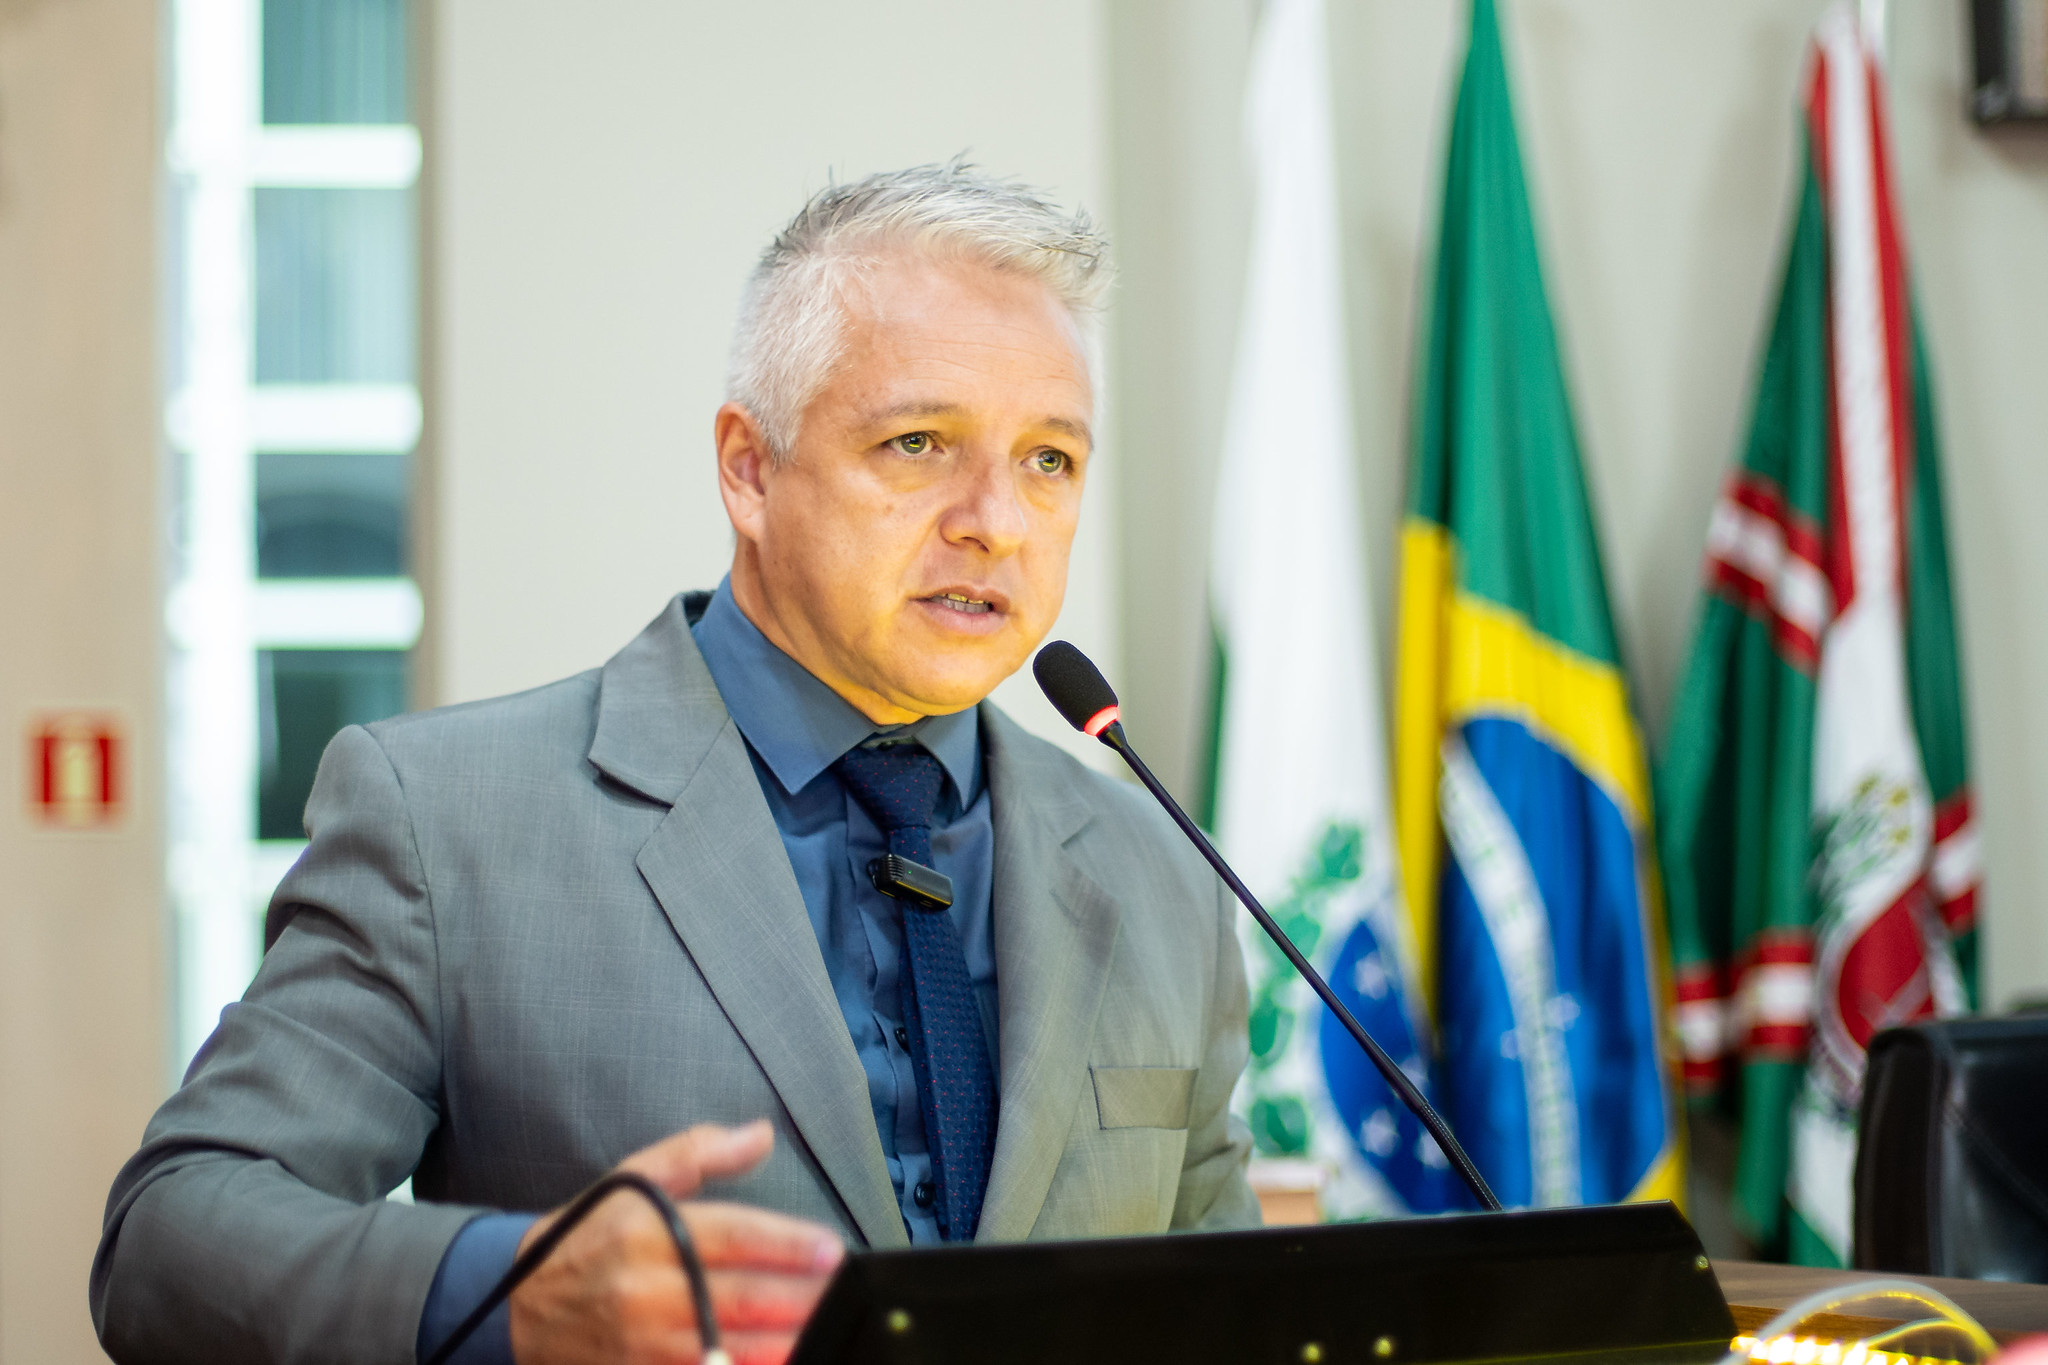 Câmara de Curitiba confirma venda de imóvel no Campina do Siqueira